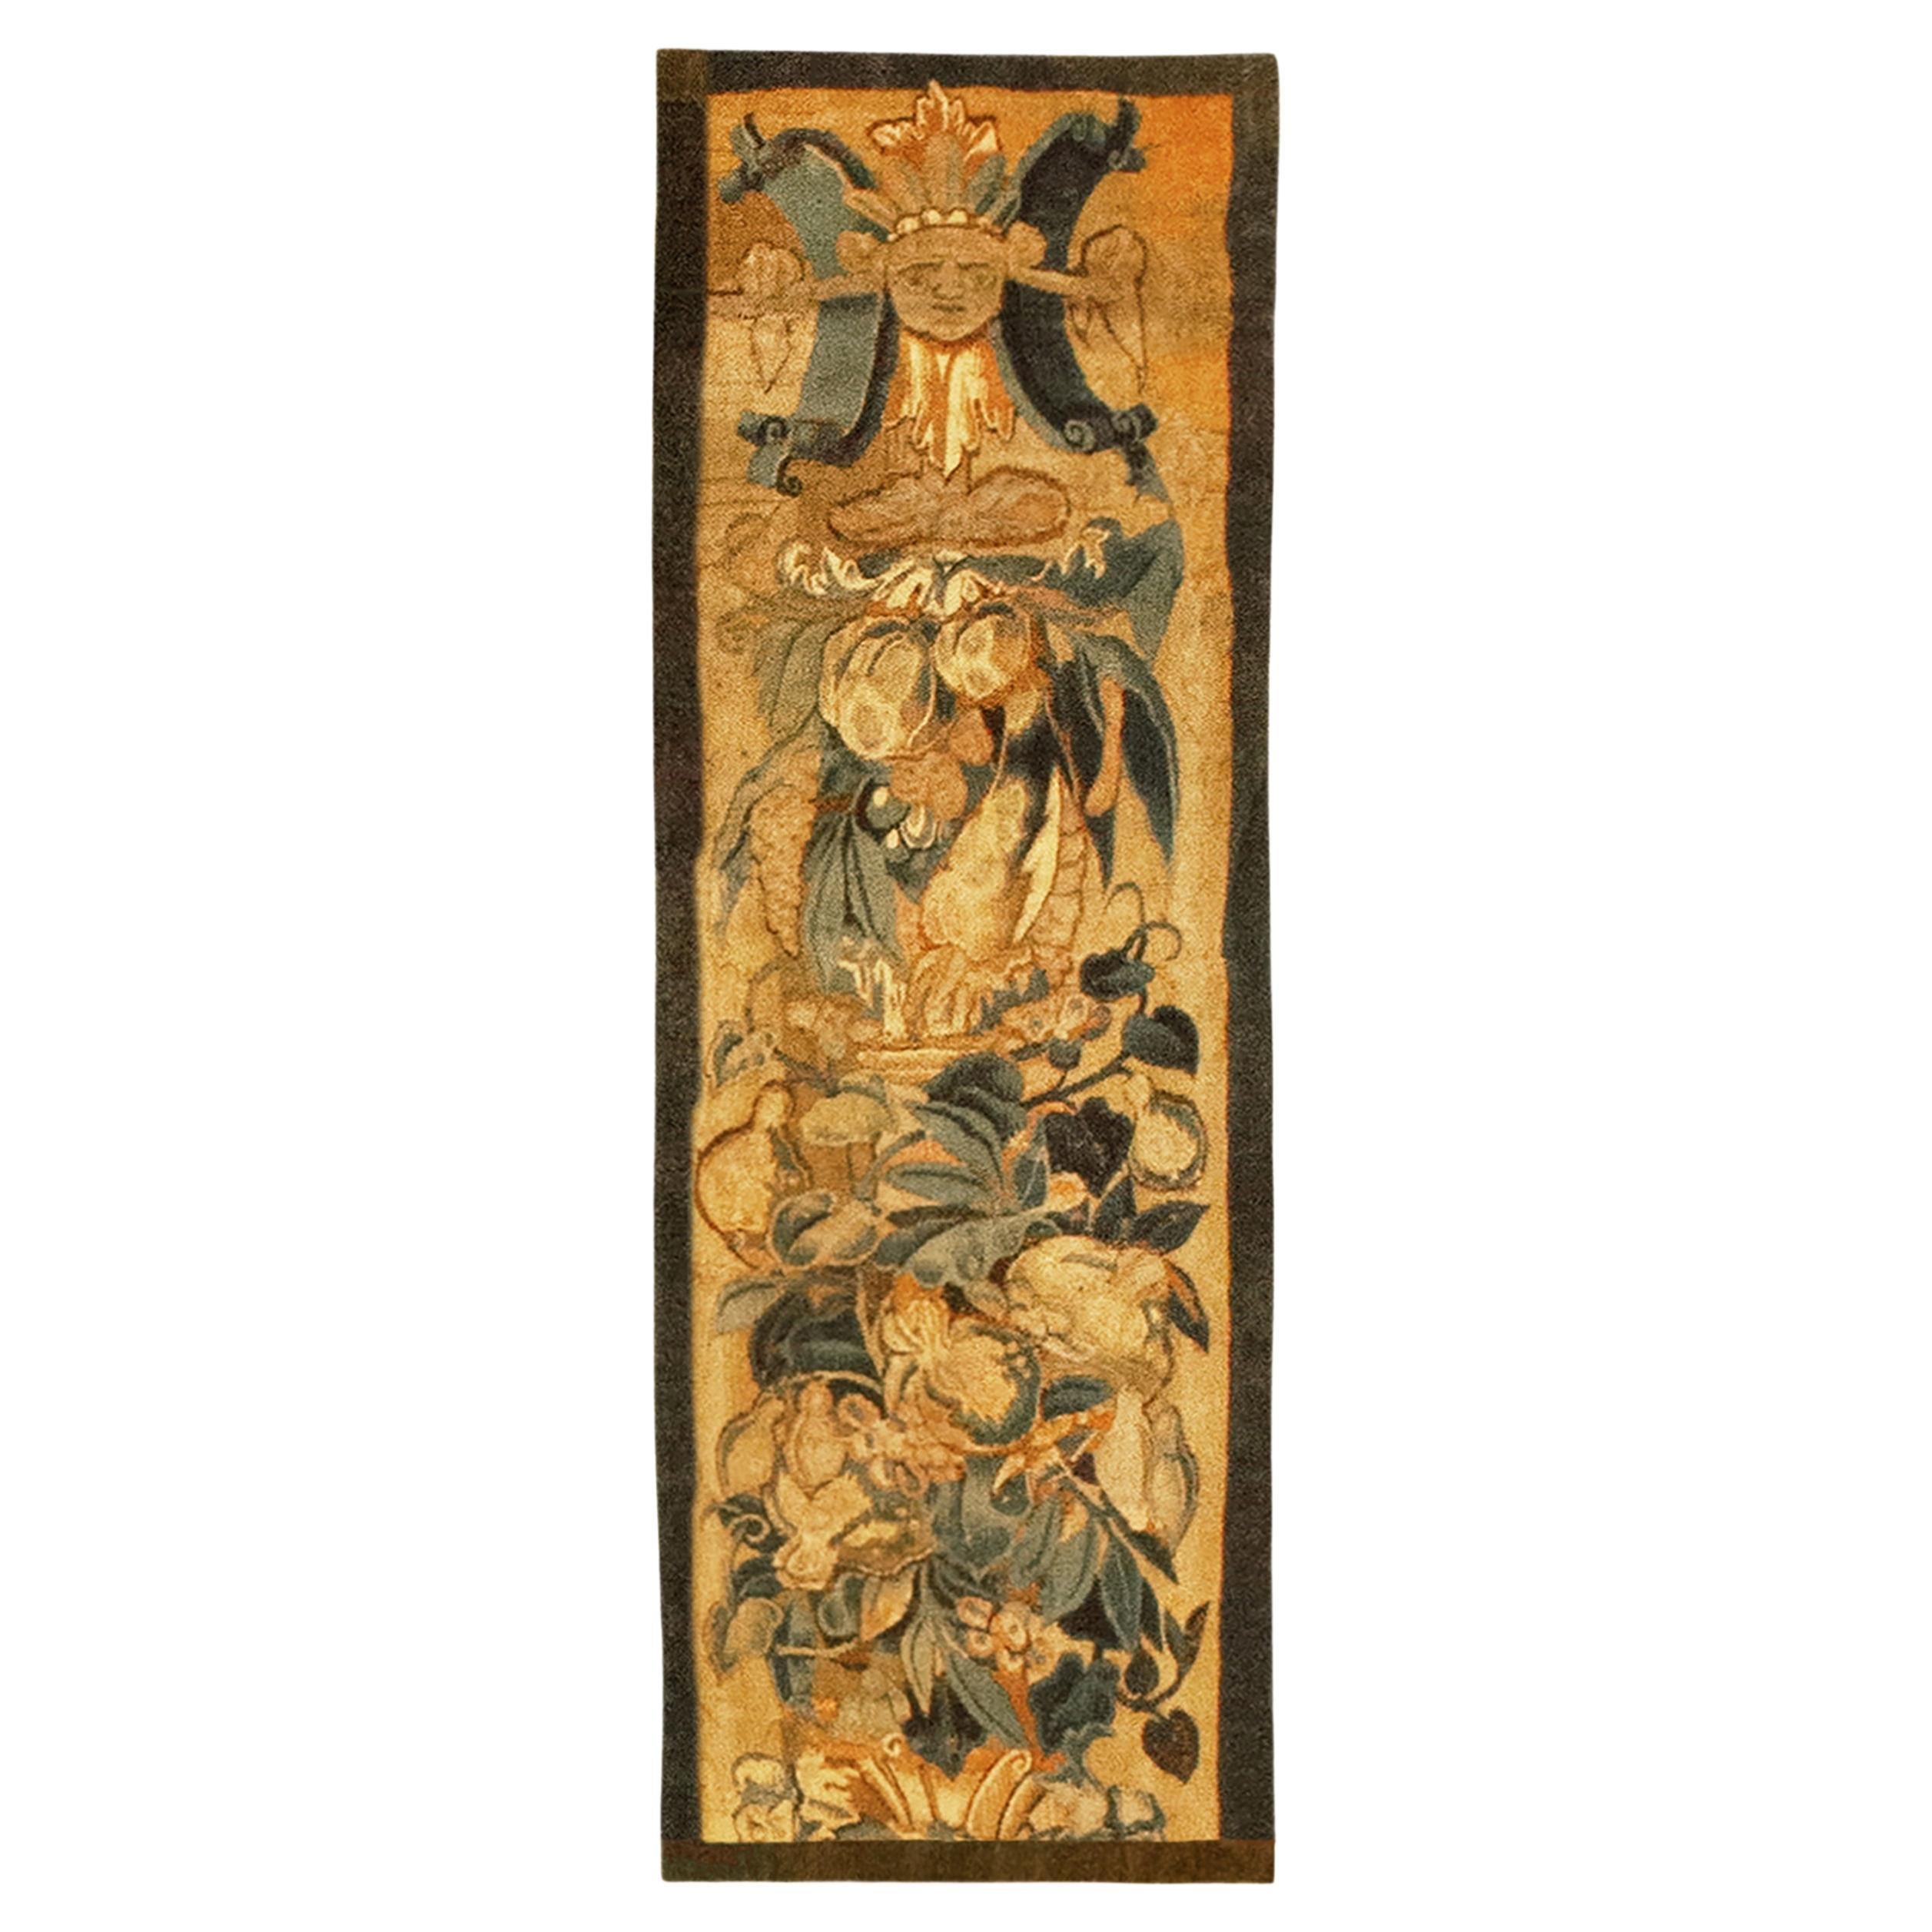 Historischer flämischer Wandteppich des späten 16. Jahrhunderts, östlich-westlich, mit Blumen